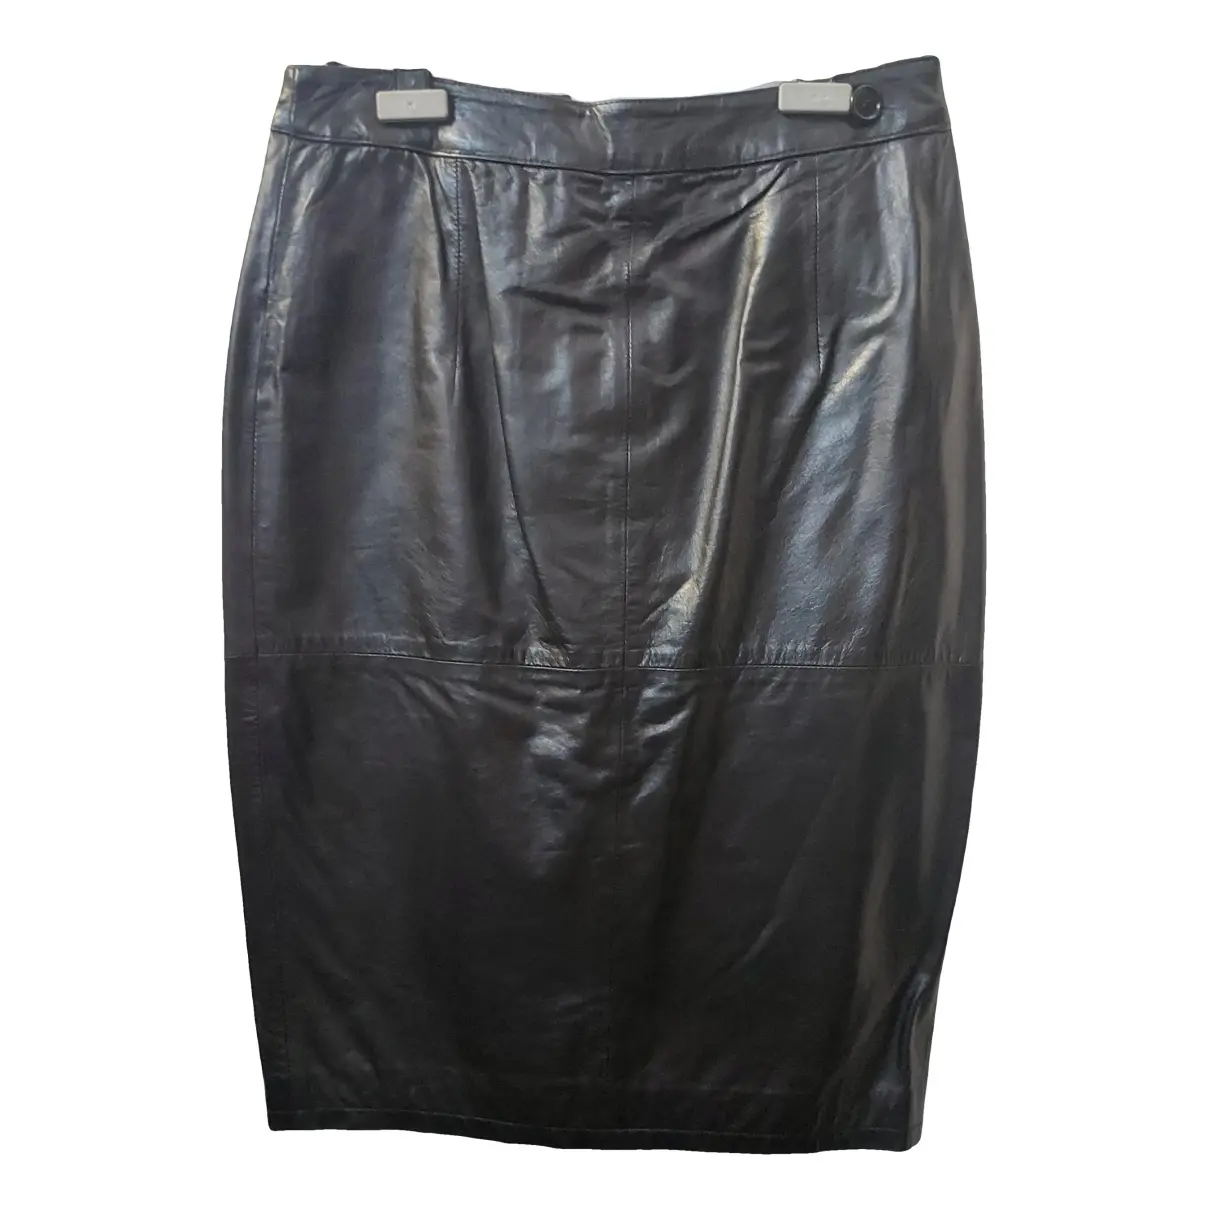 Leather skirt Gianfranco Ferré